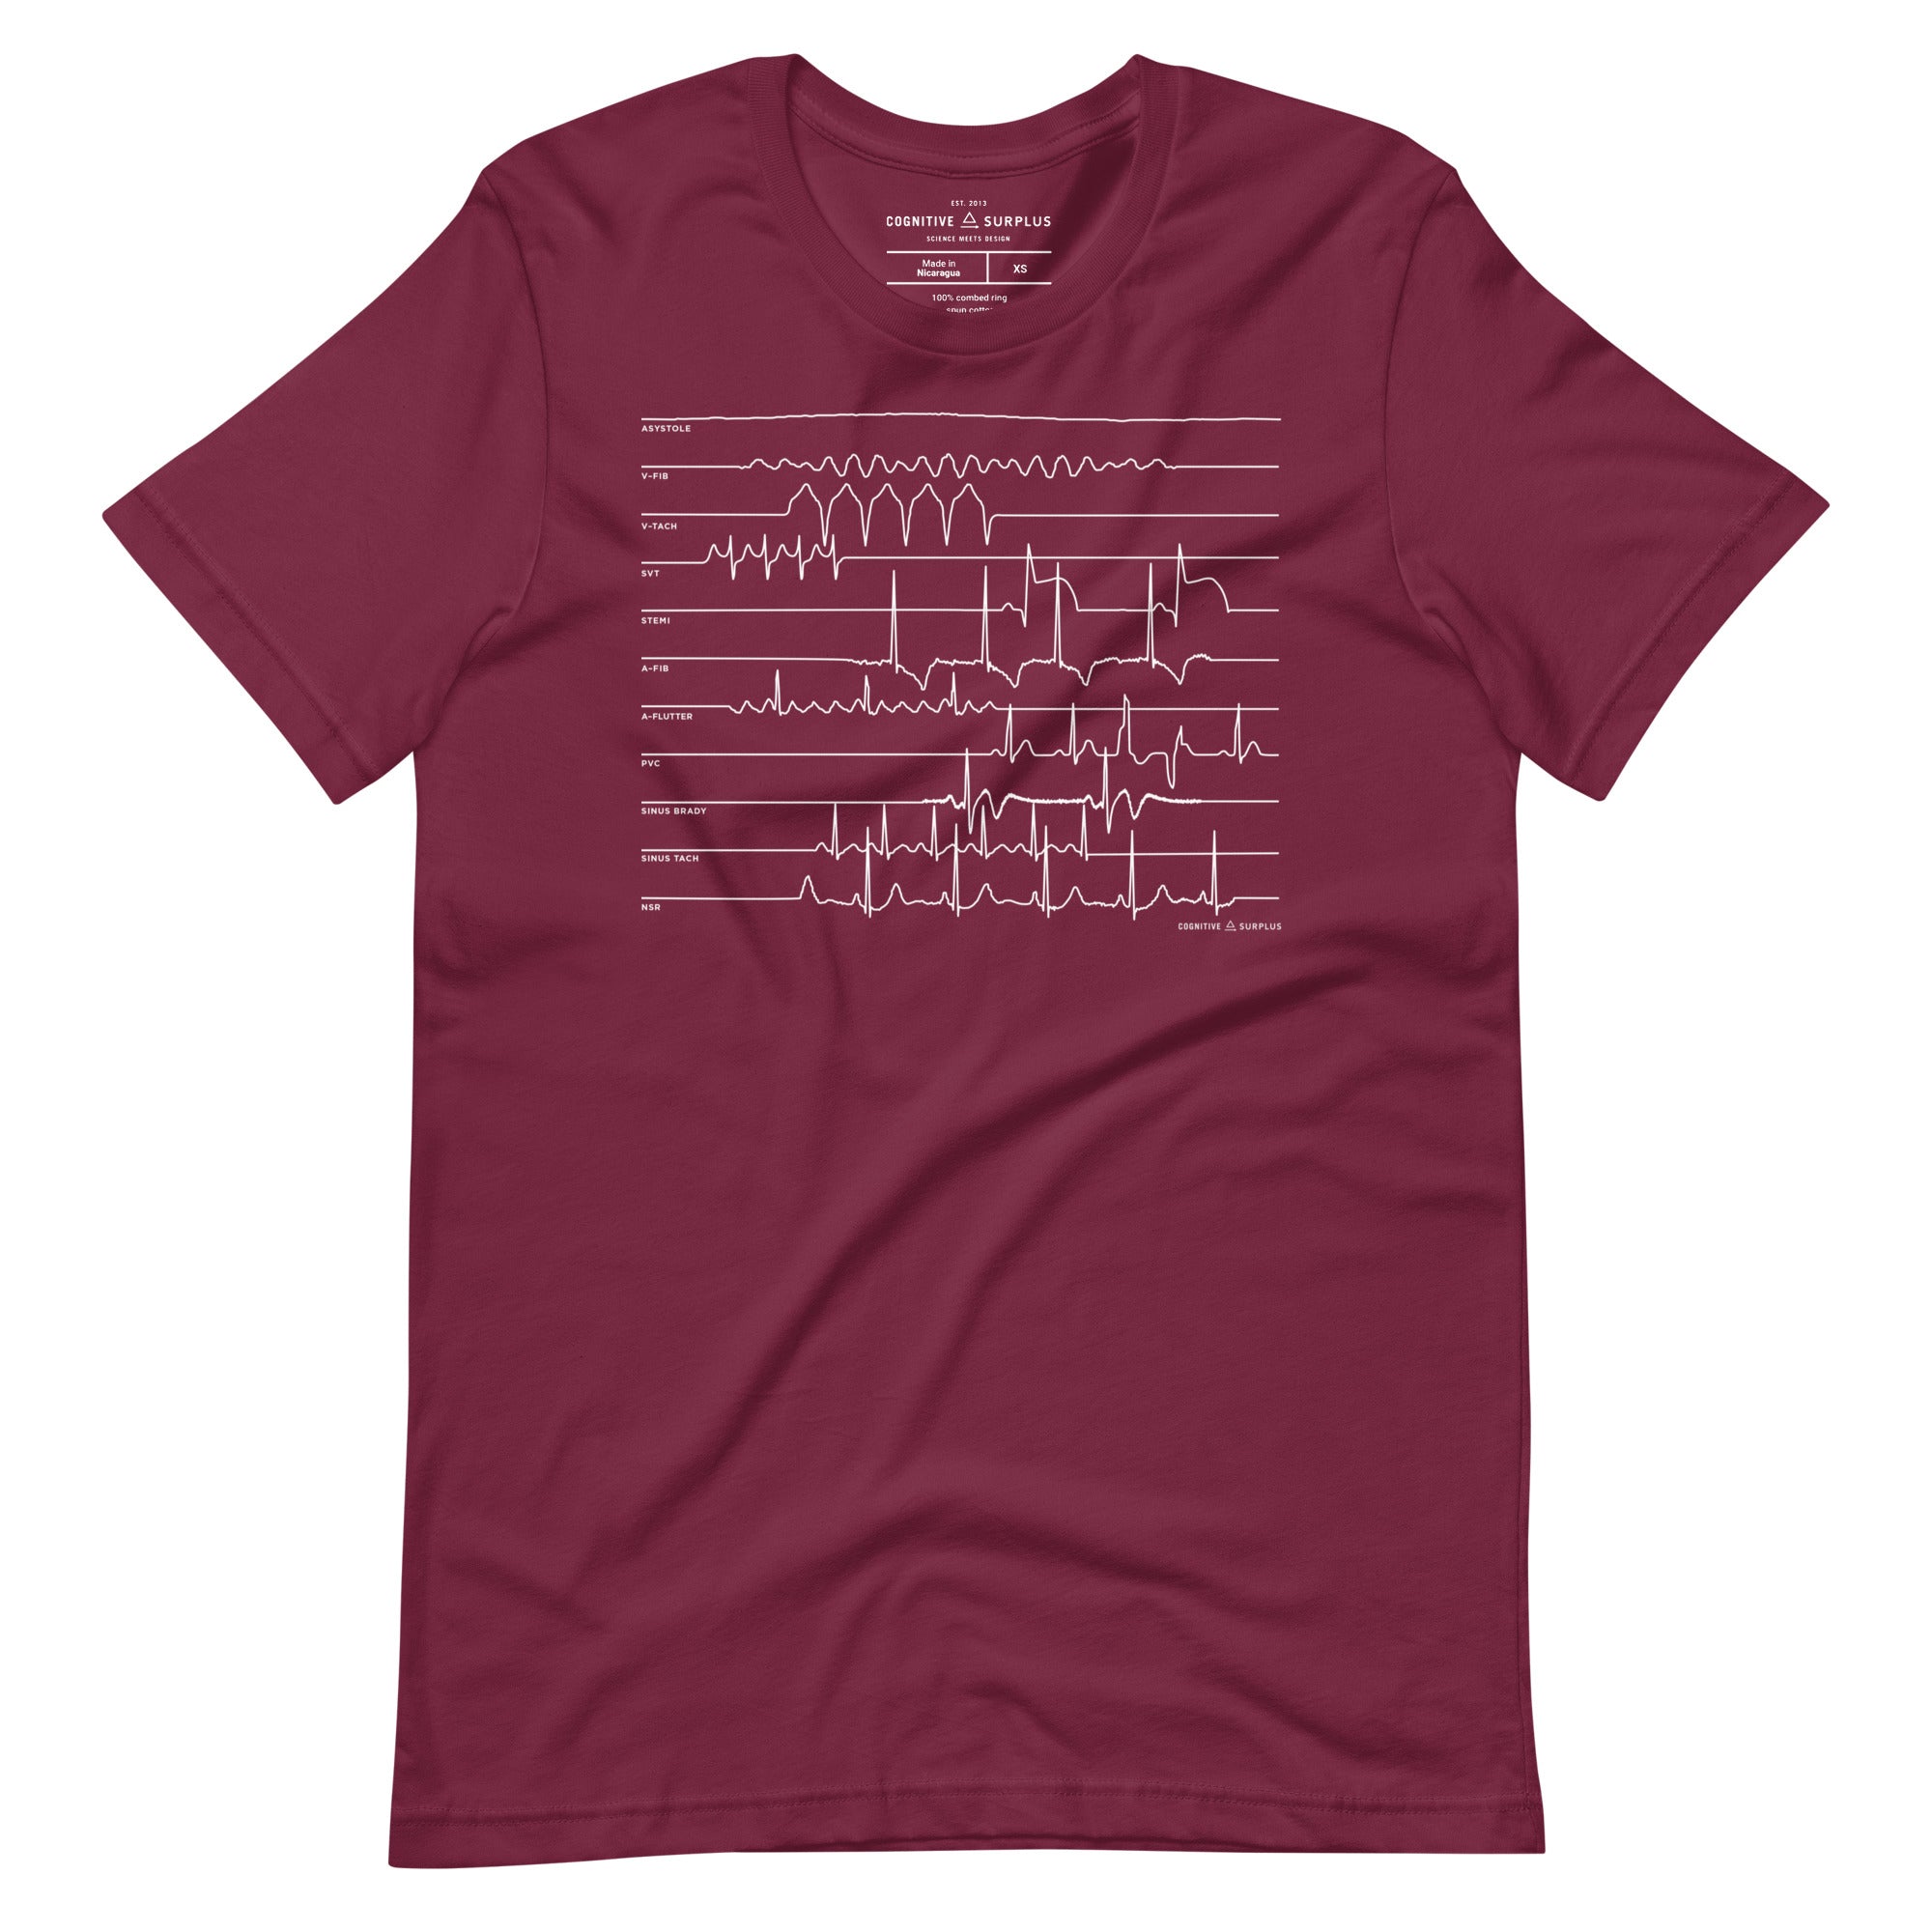 unisex-staple-t-shirt-maroon-front-6547bca5a33e3.jpg